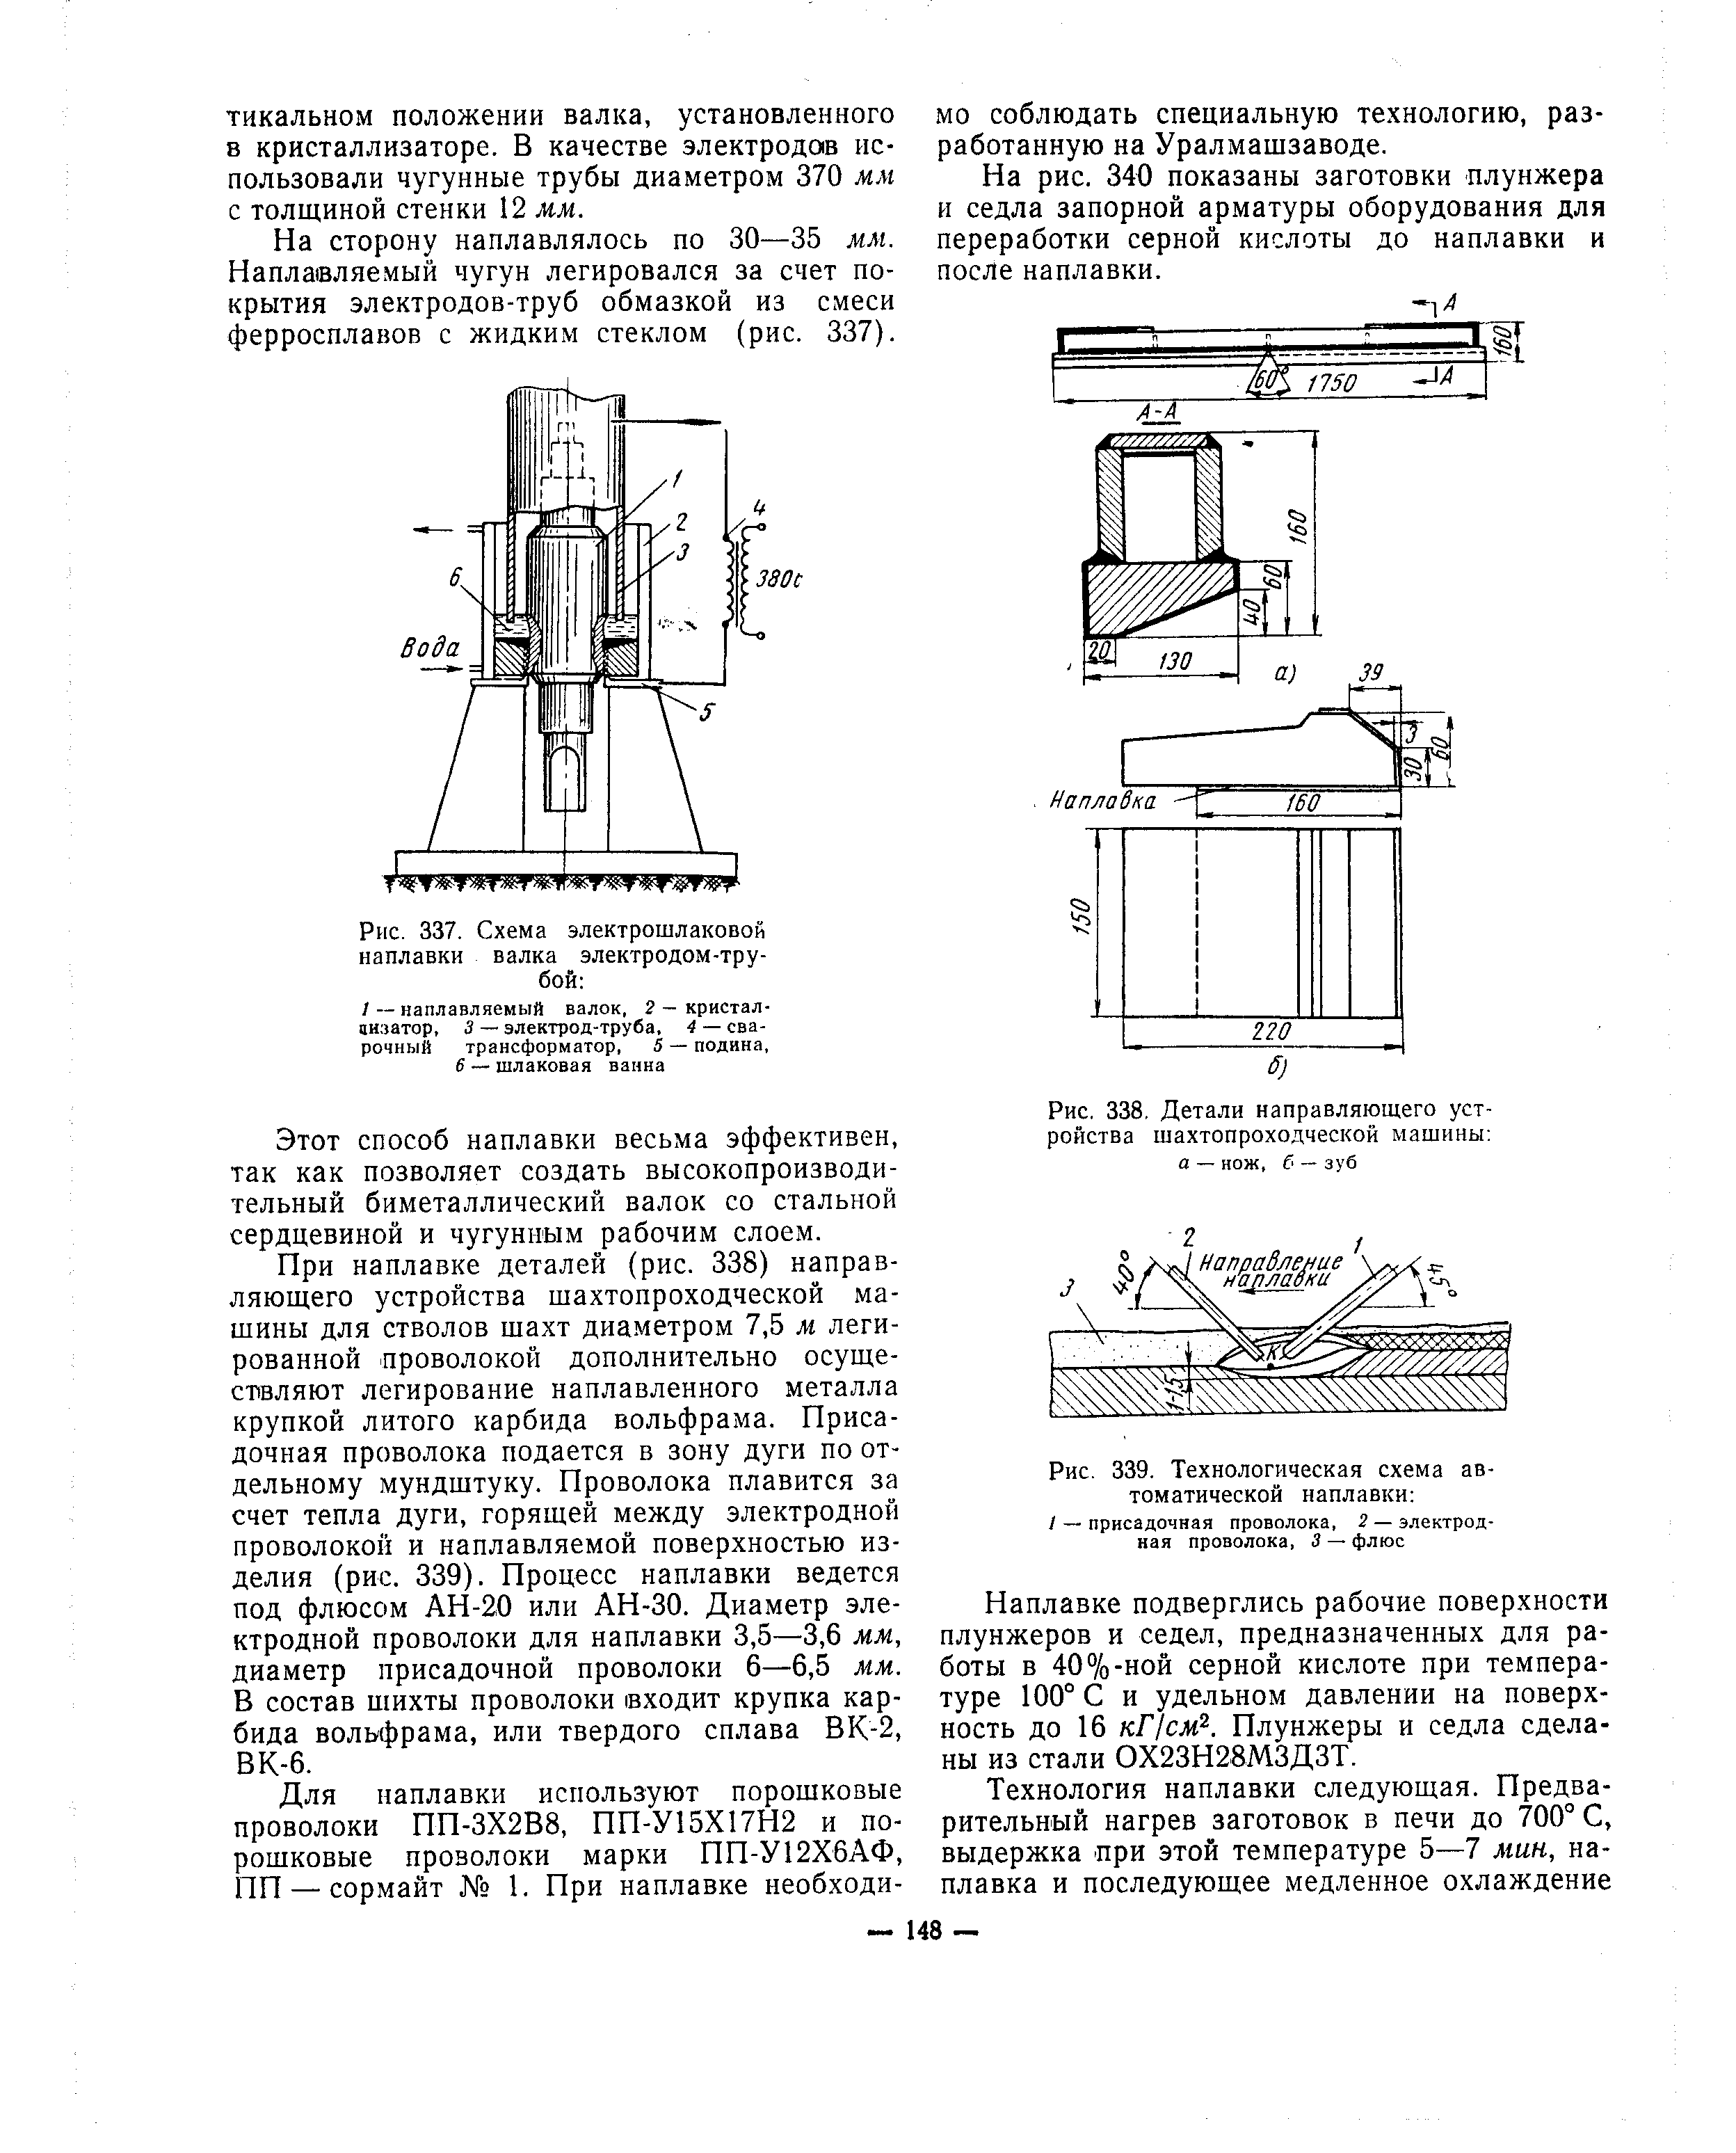 Рис. 337. Схема электрошлаковой наплавки валка электродом-трубой 
